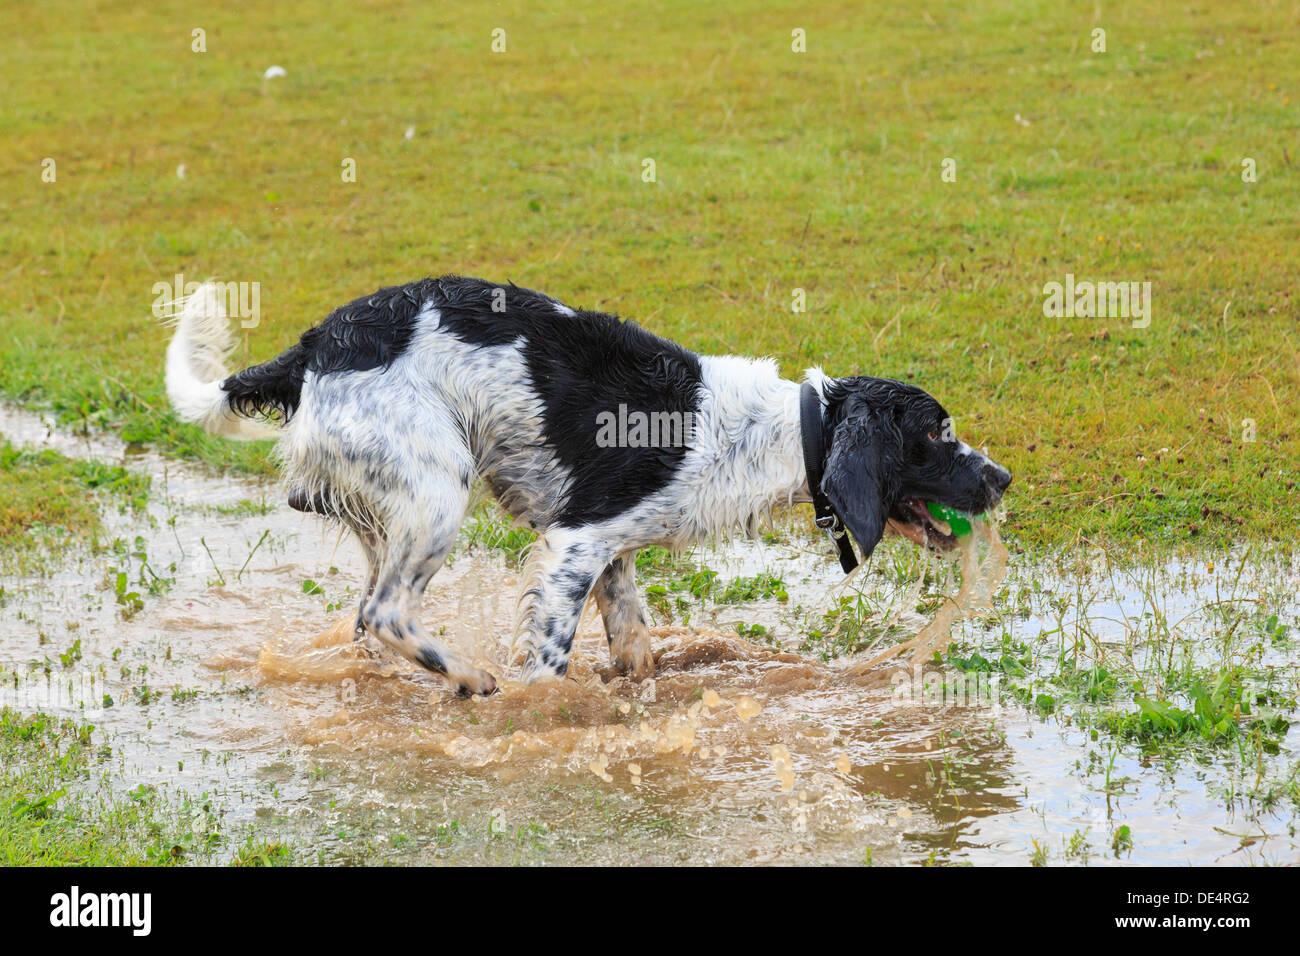 Triefend nasse schwarz-weiß English Springer Spaniel Hund läuft in einer Pfütze Wasser einen Ball abrufen. England, UK, Großbritannien Stockfoto